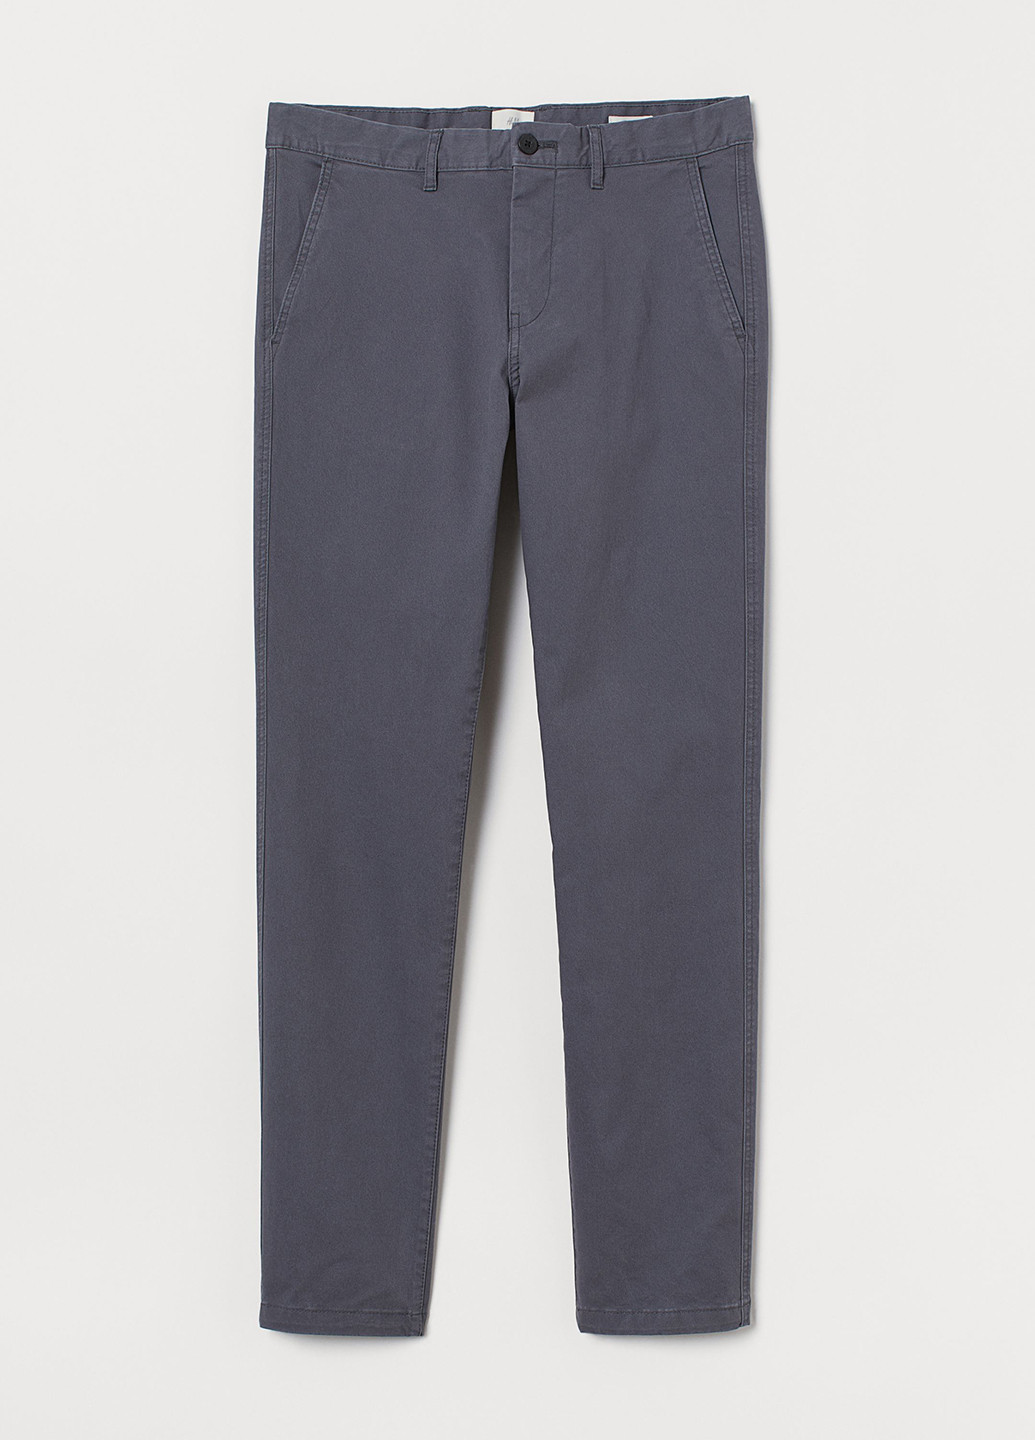 Темно-серые кэжуал демисезонные чиносы брюки H&M